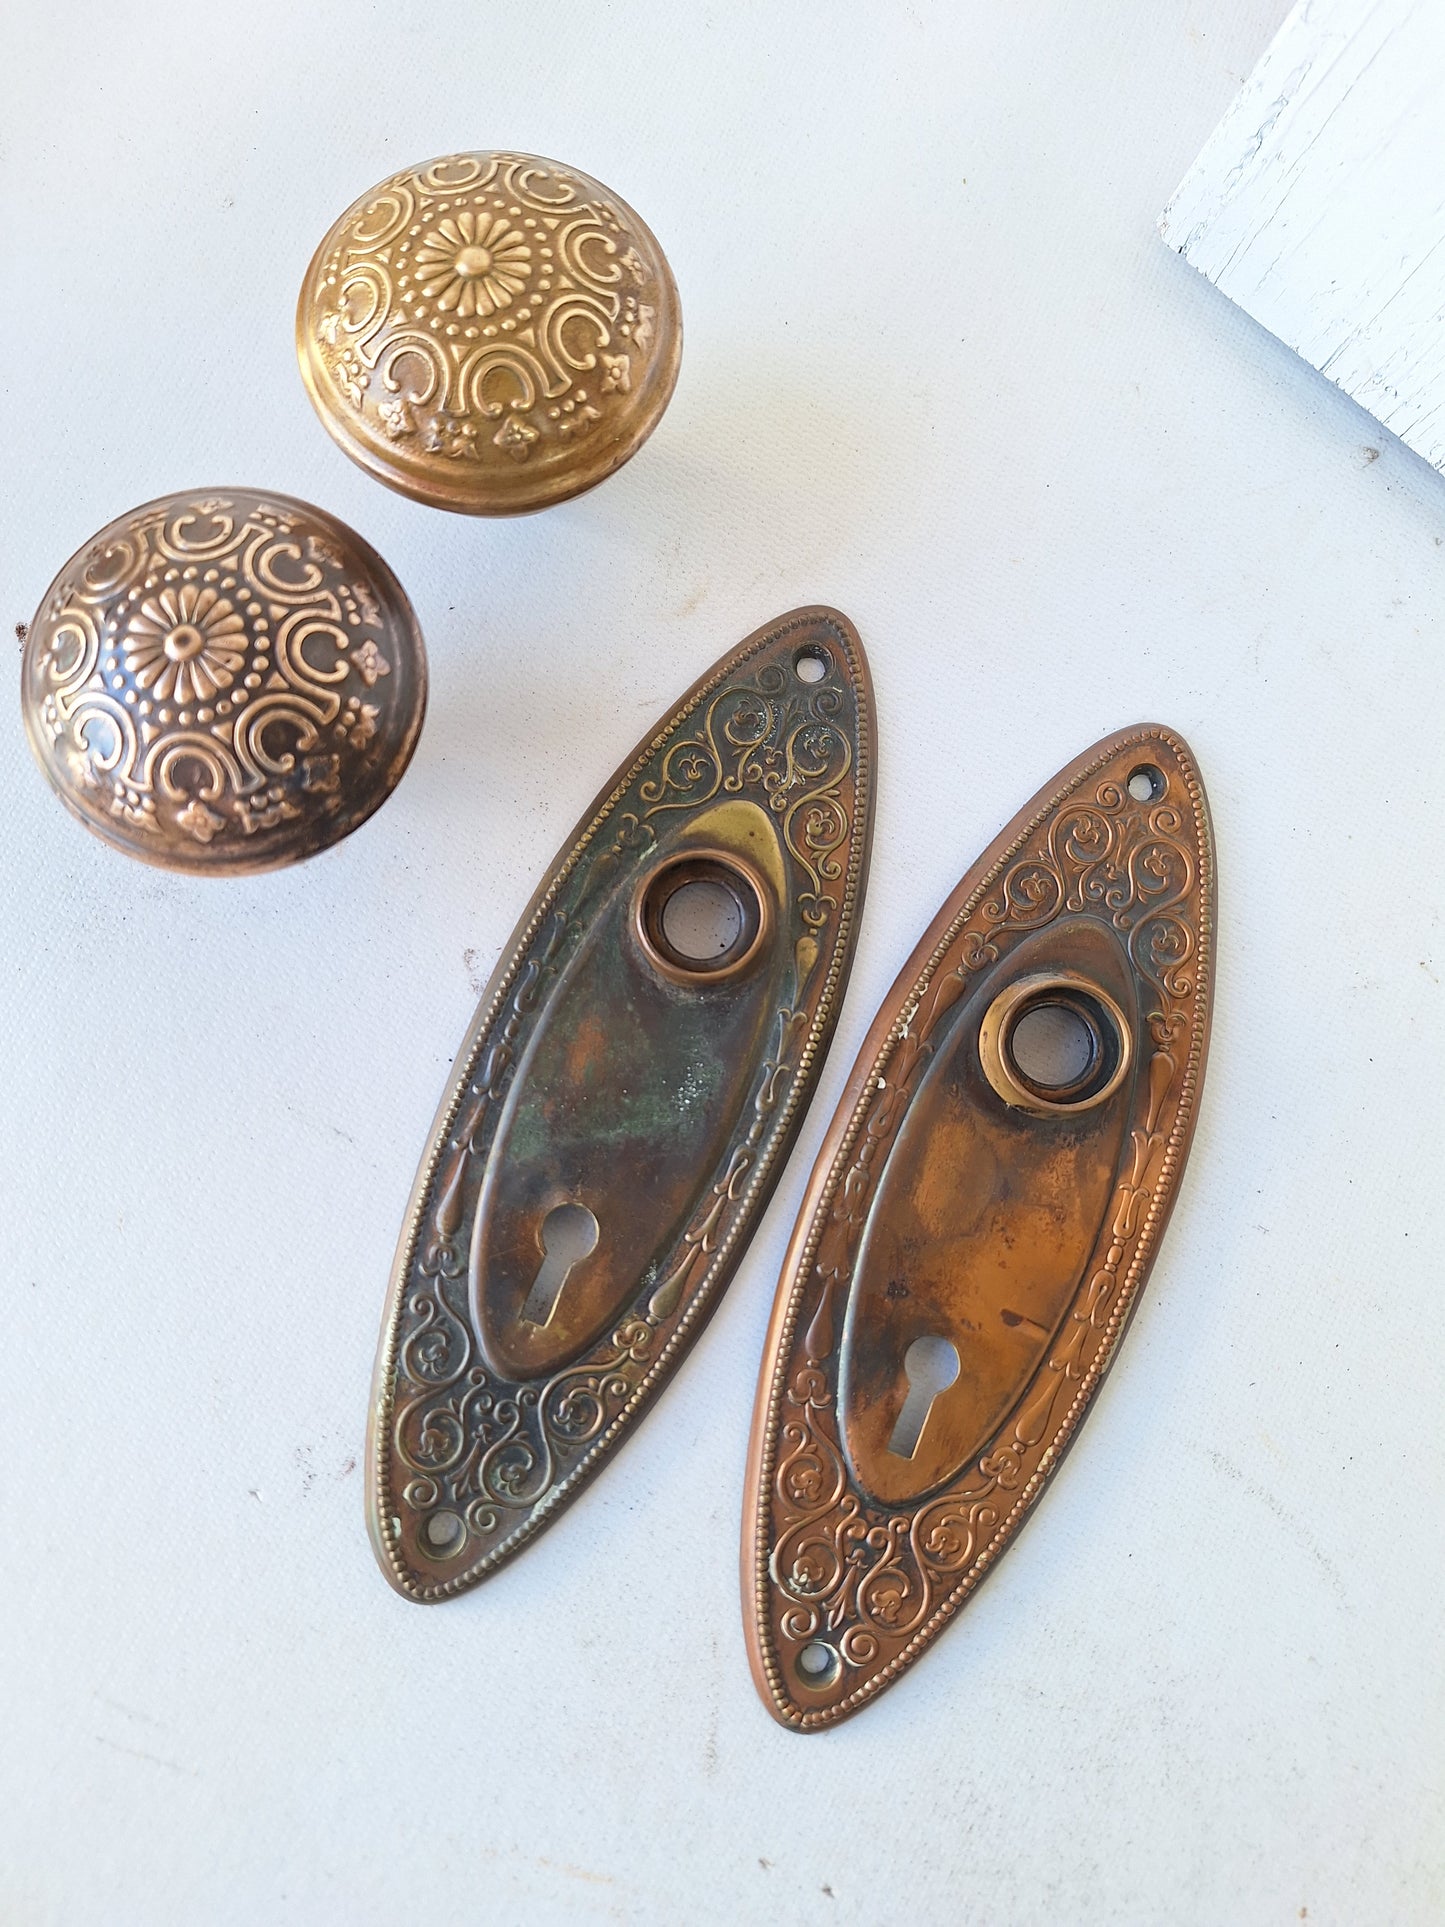 Antique Oval Backplates with Daisy Design Brass Doorknobs, Flower Design Door Hardware in Antique Bronze 040902